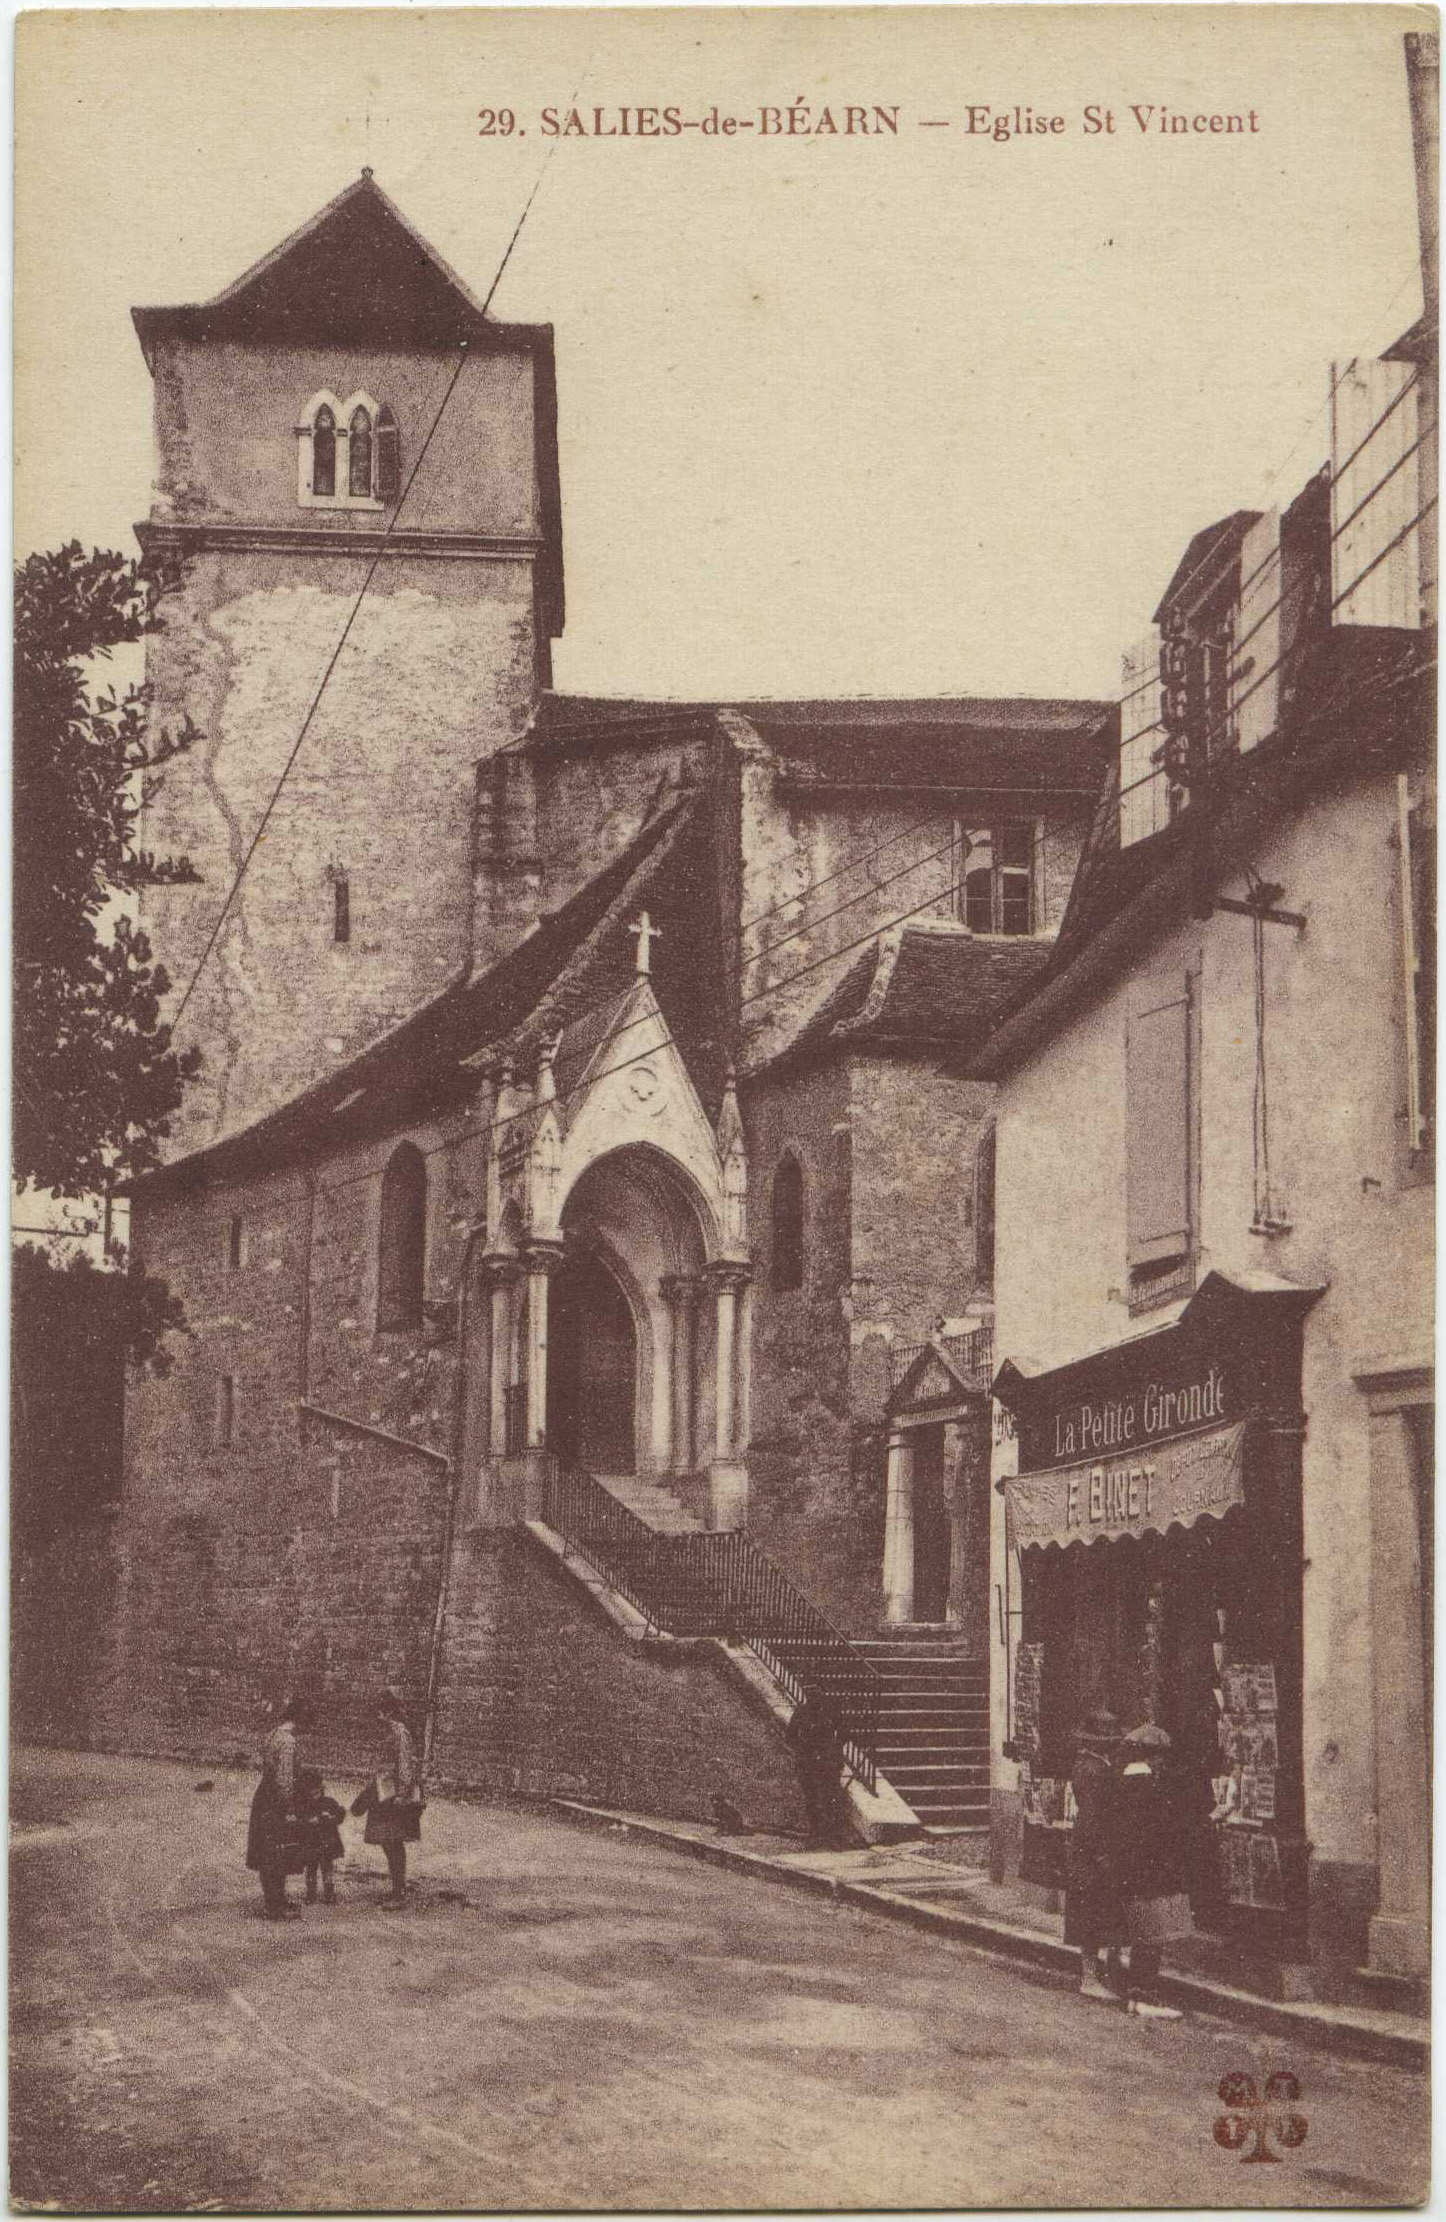 Salies-de-Béarn - Eglise St Vincent